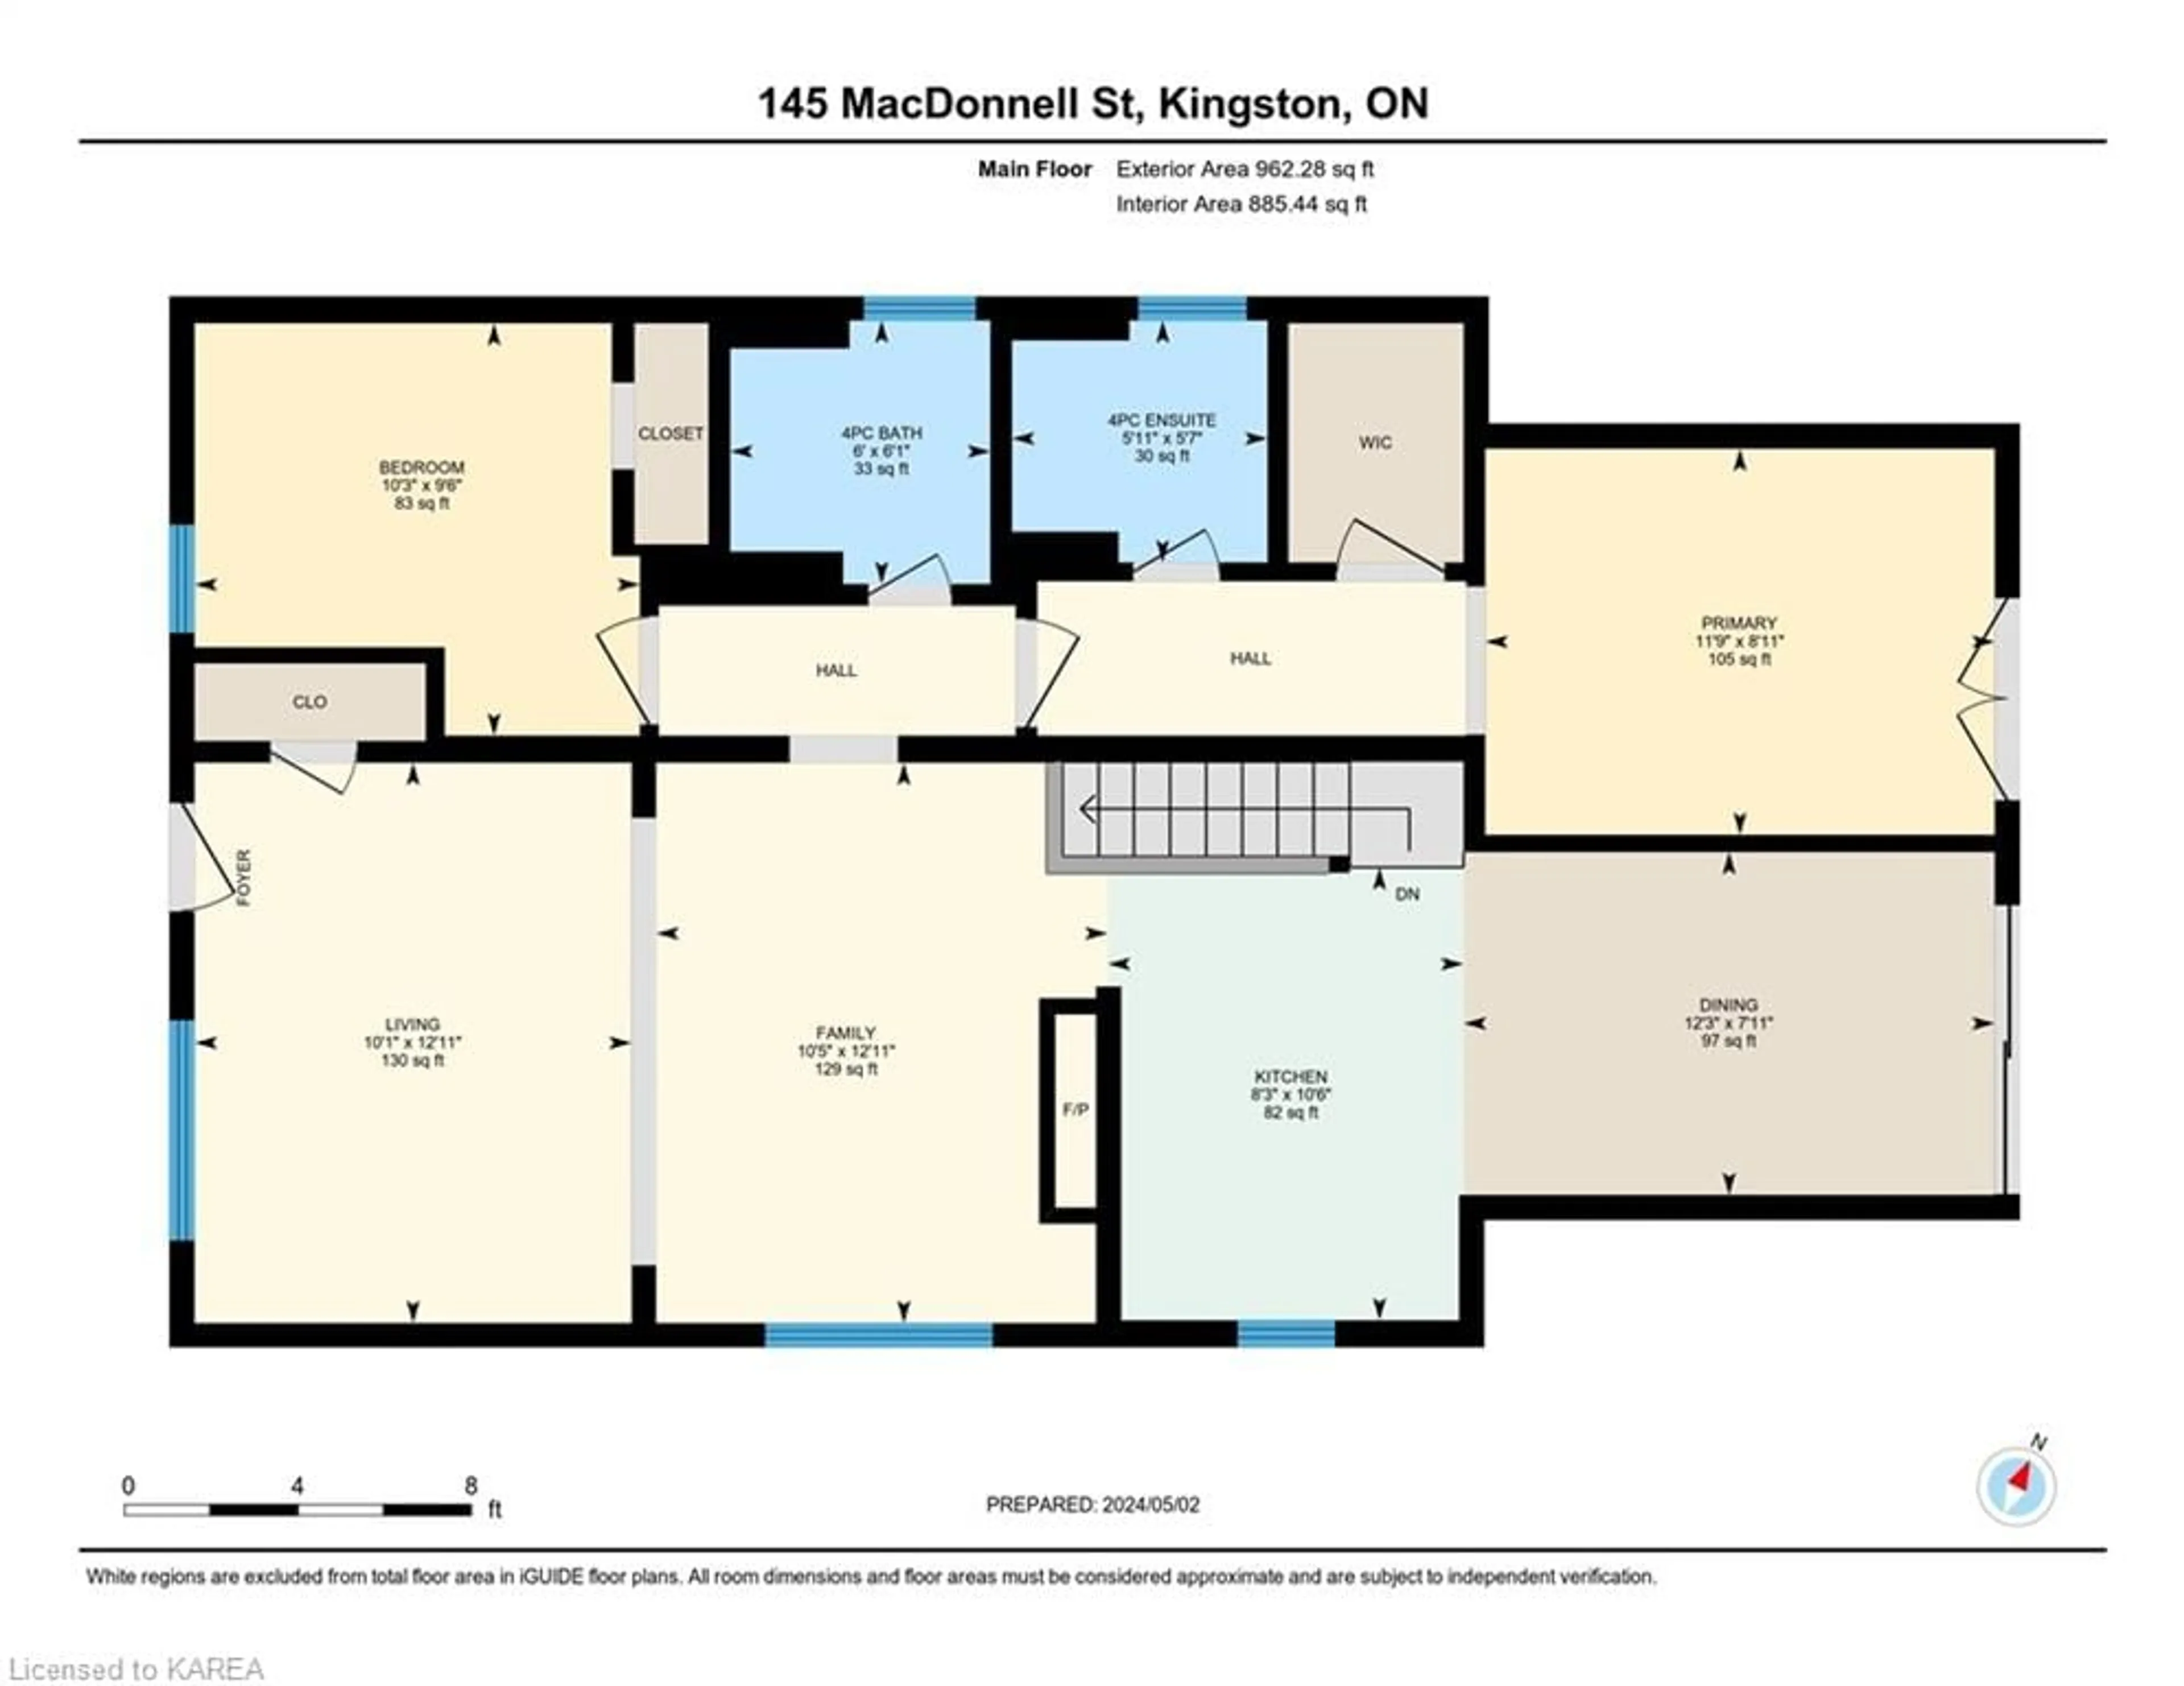 Floor plan for 145 Macdonnell St, Kingston Ontario K7L 4B9